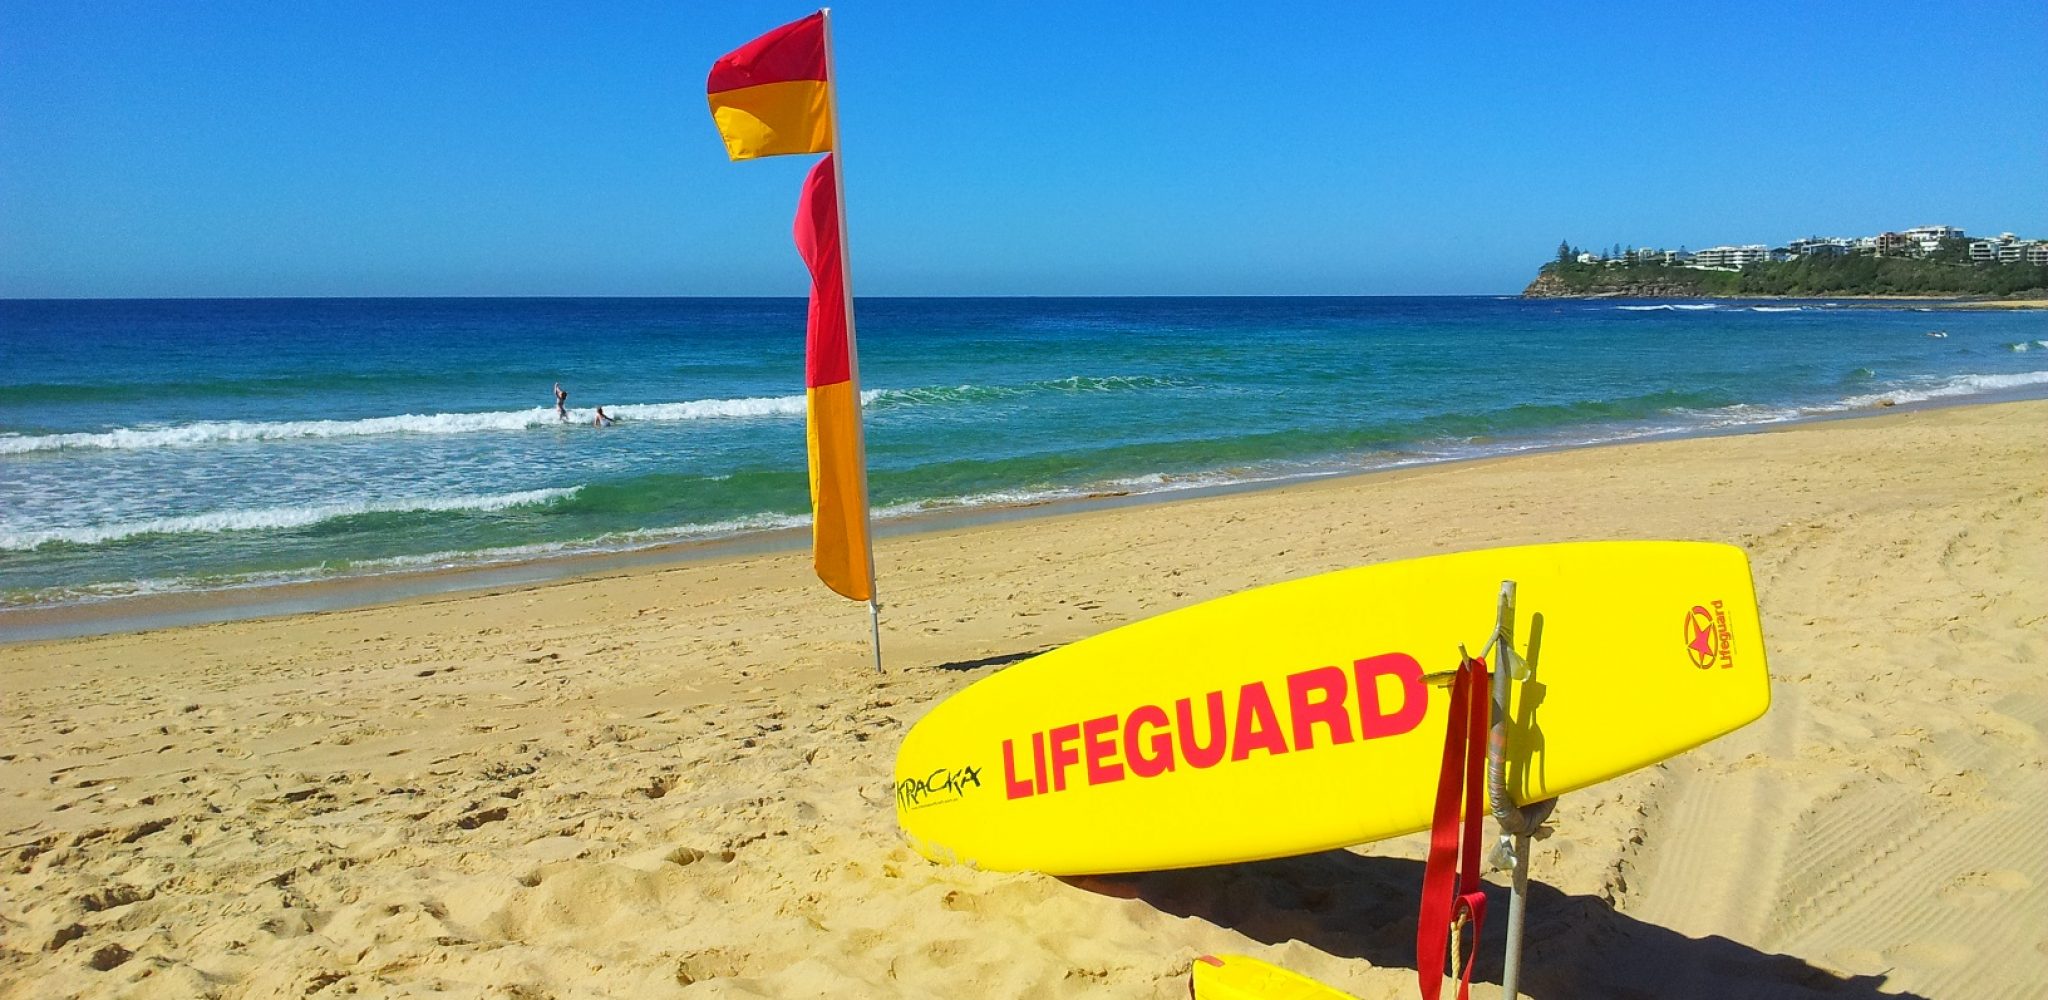 Dicky Beach Surf Life Saving Club